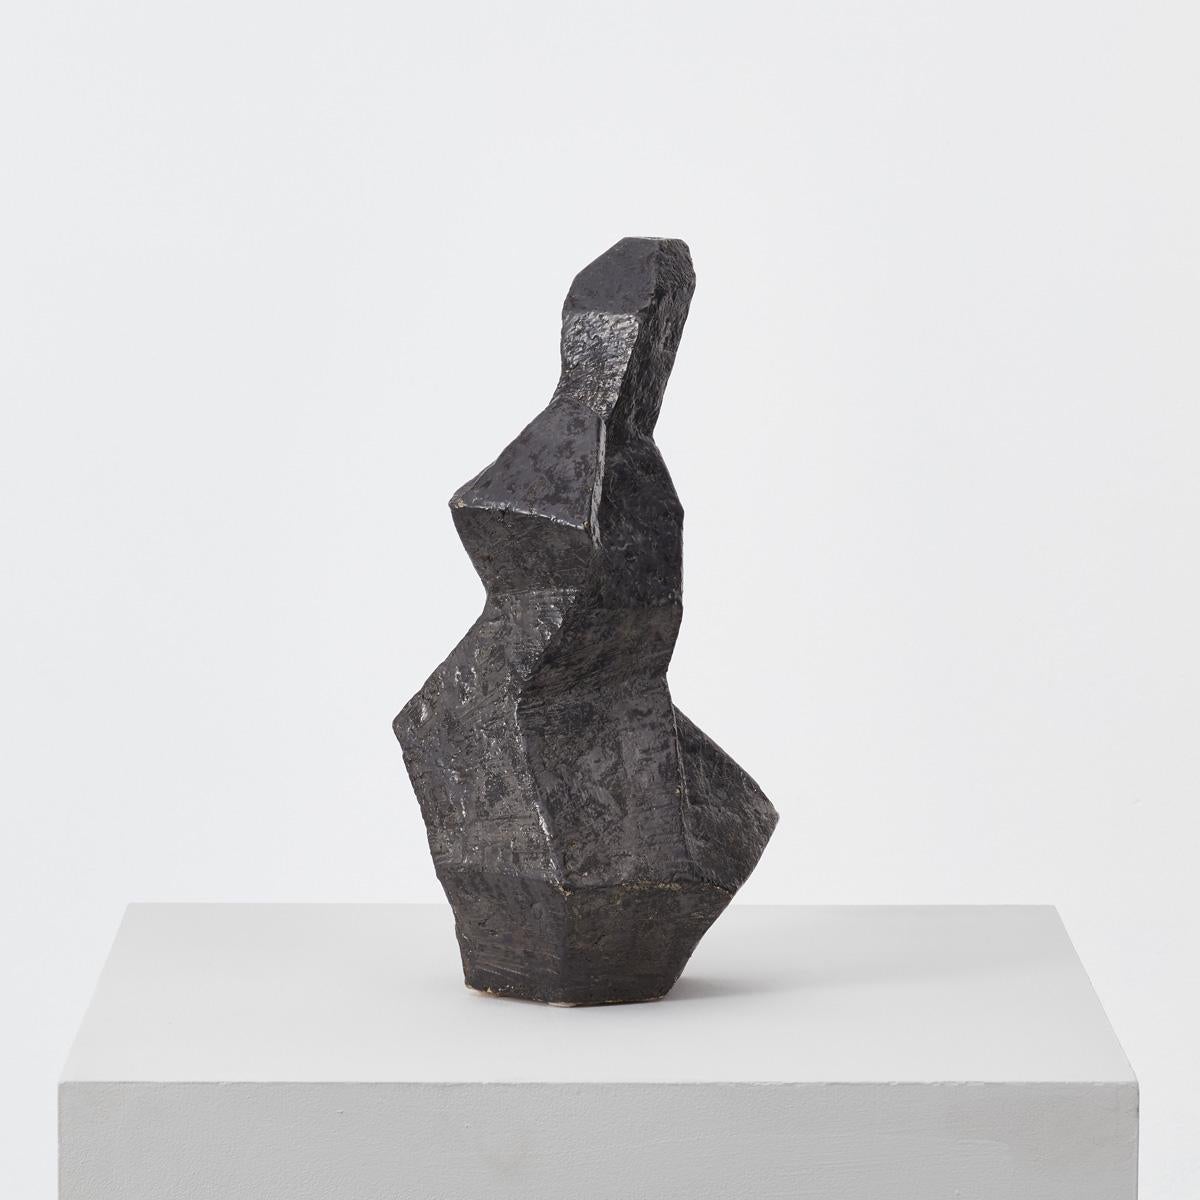 Dieses abstrakte skulpturale Werk ähnelt einer anthroposophischen Figur. Die unzusammenhängende Keramikskulptur hat eine raue Oberfläche und ist mit schwarzer Glasur überzogen, durch die sich kleine Spitzen der weißen Unterglasur abzeichnen. Die